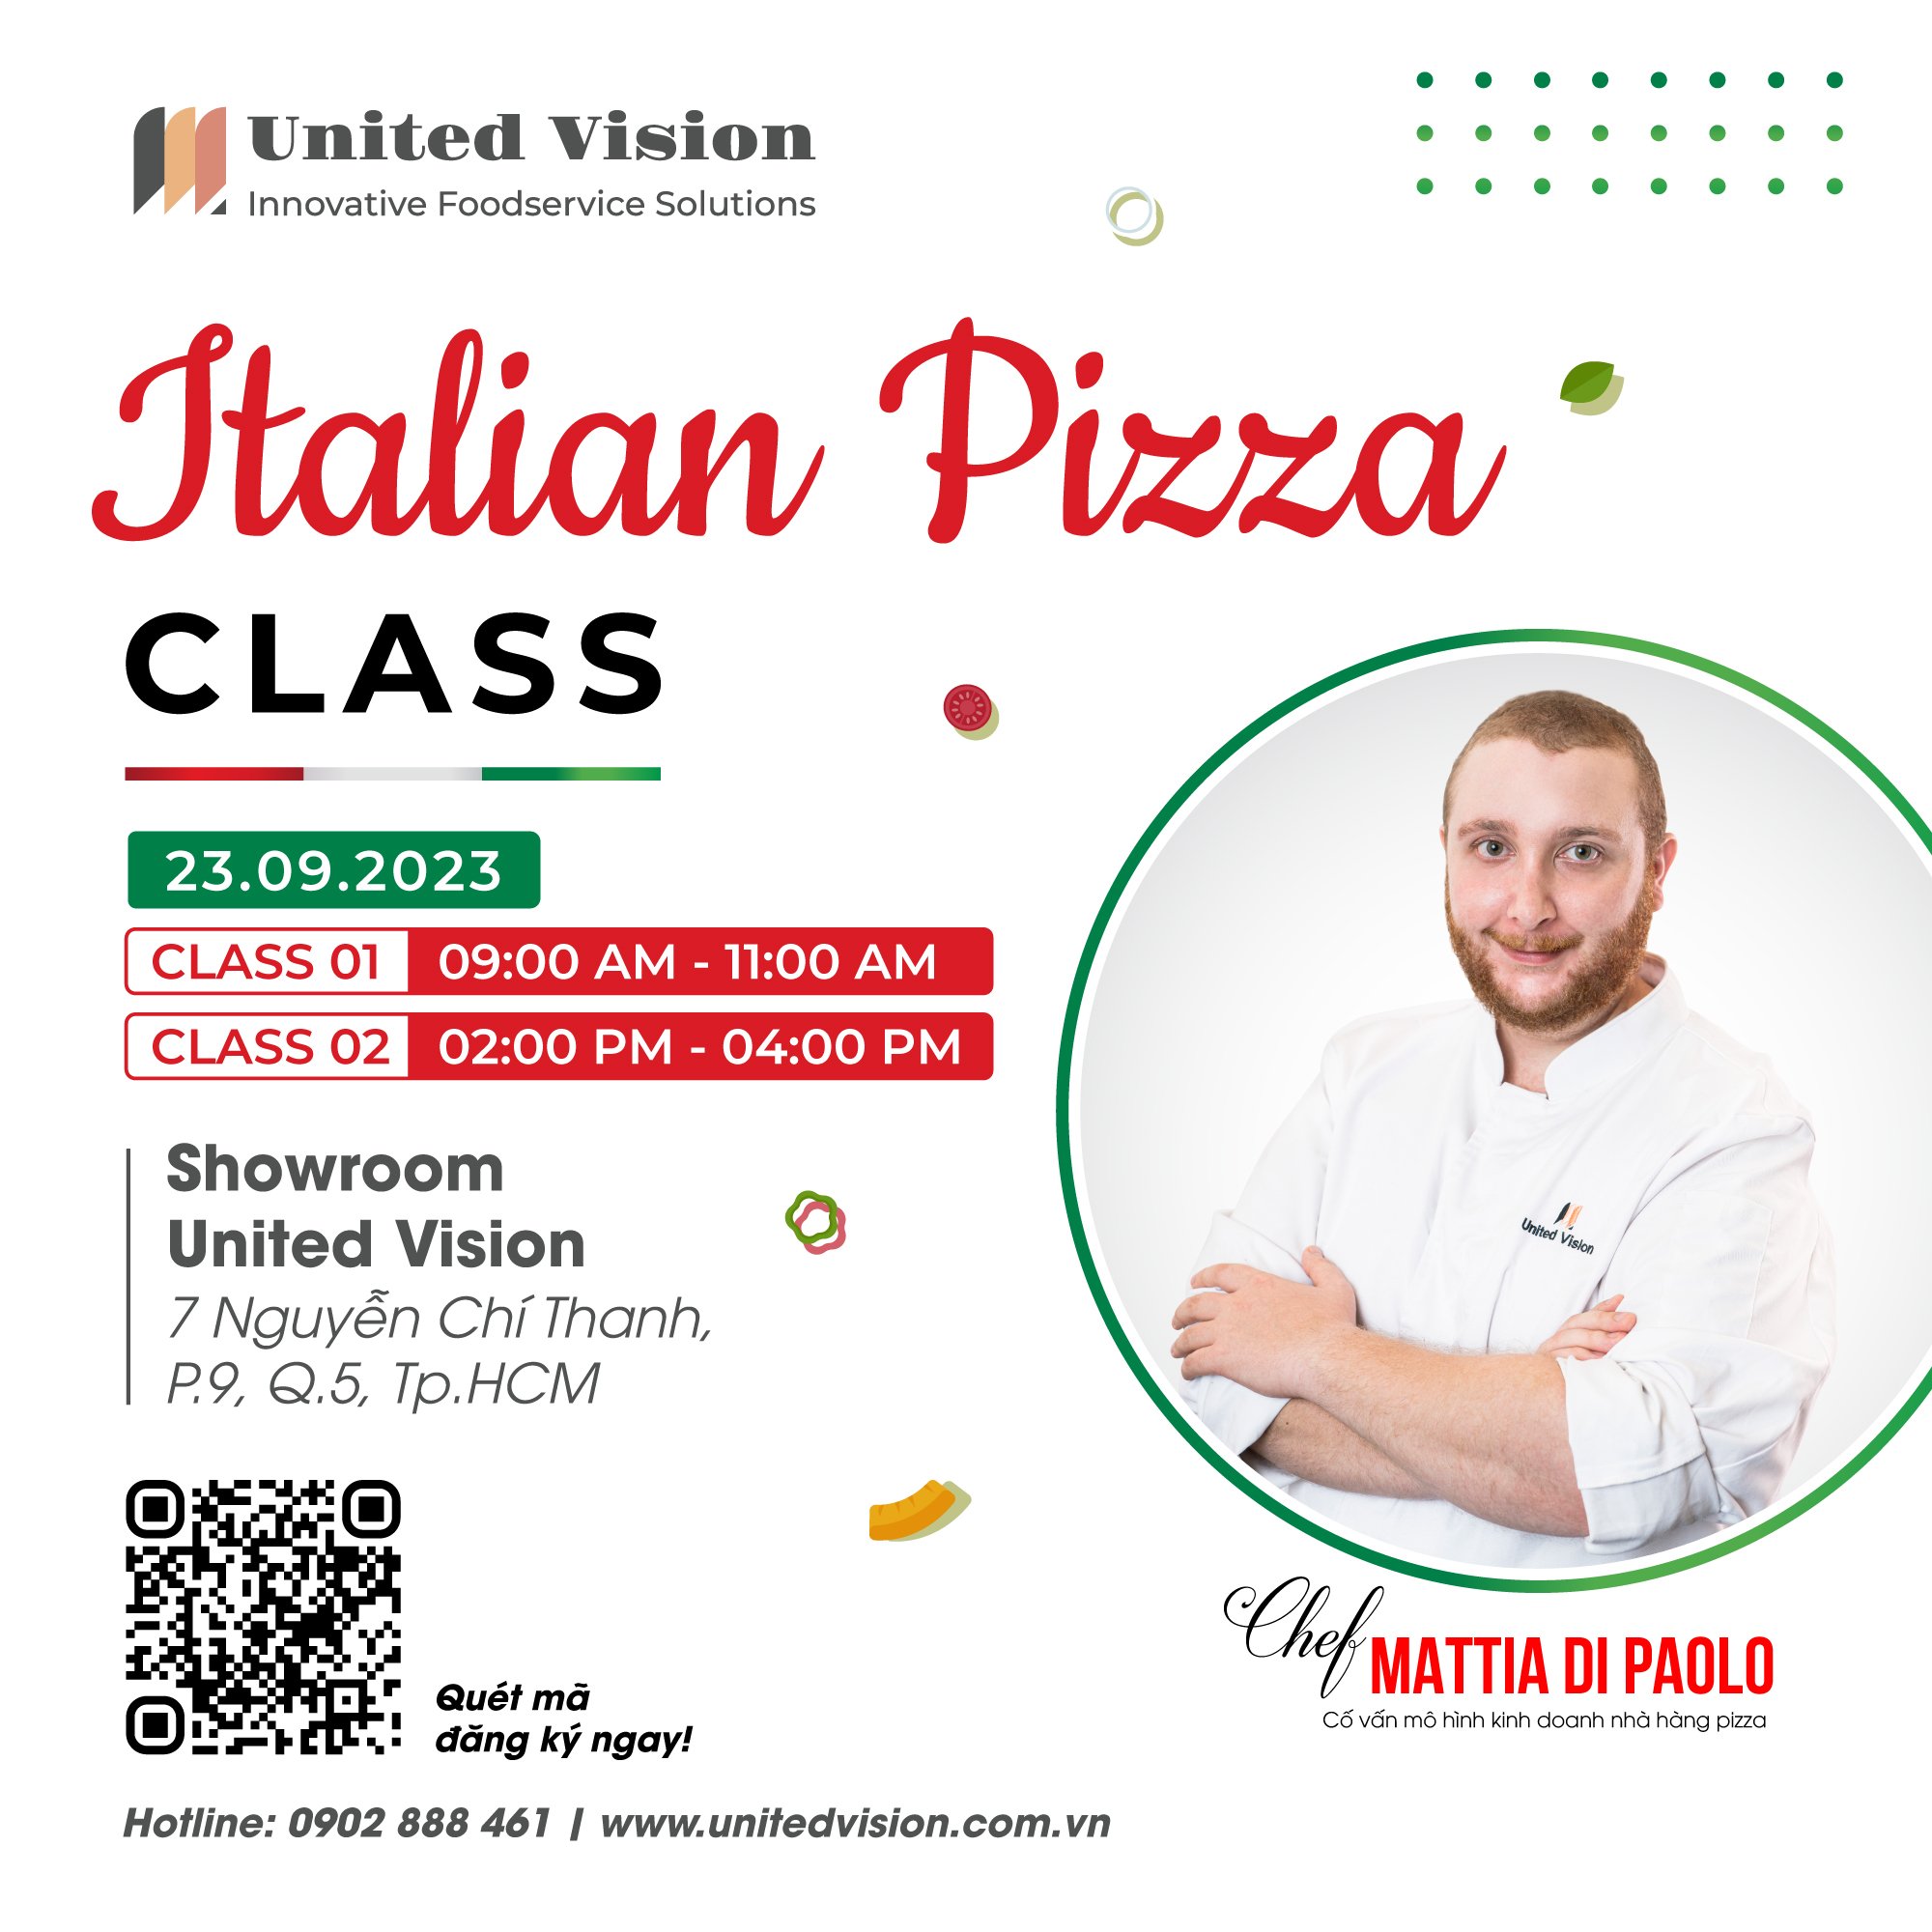 Italian Pizza Class With Chef Mattia Di Paolo At United Vision